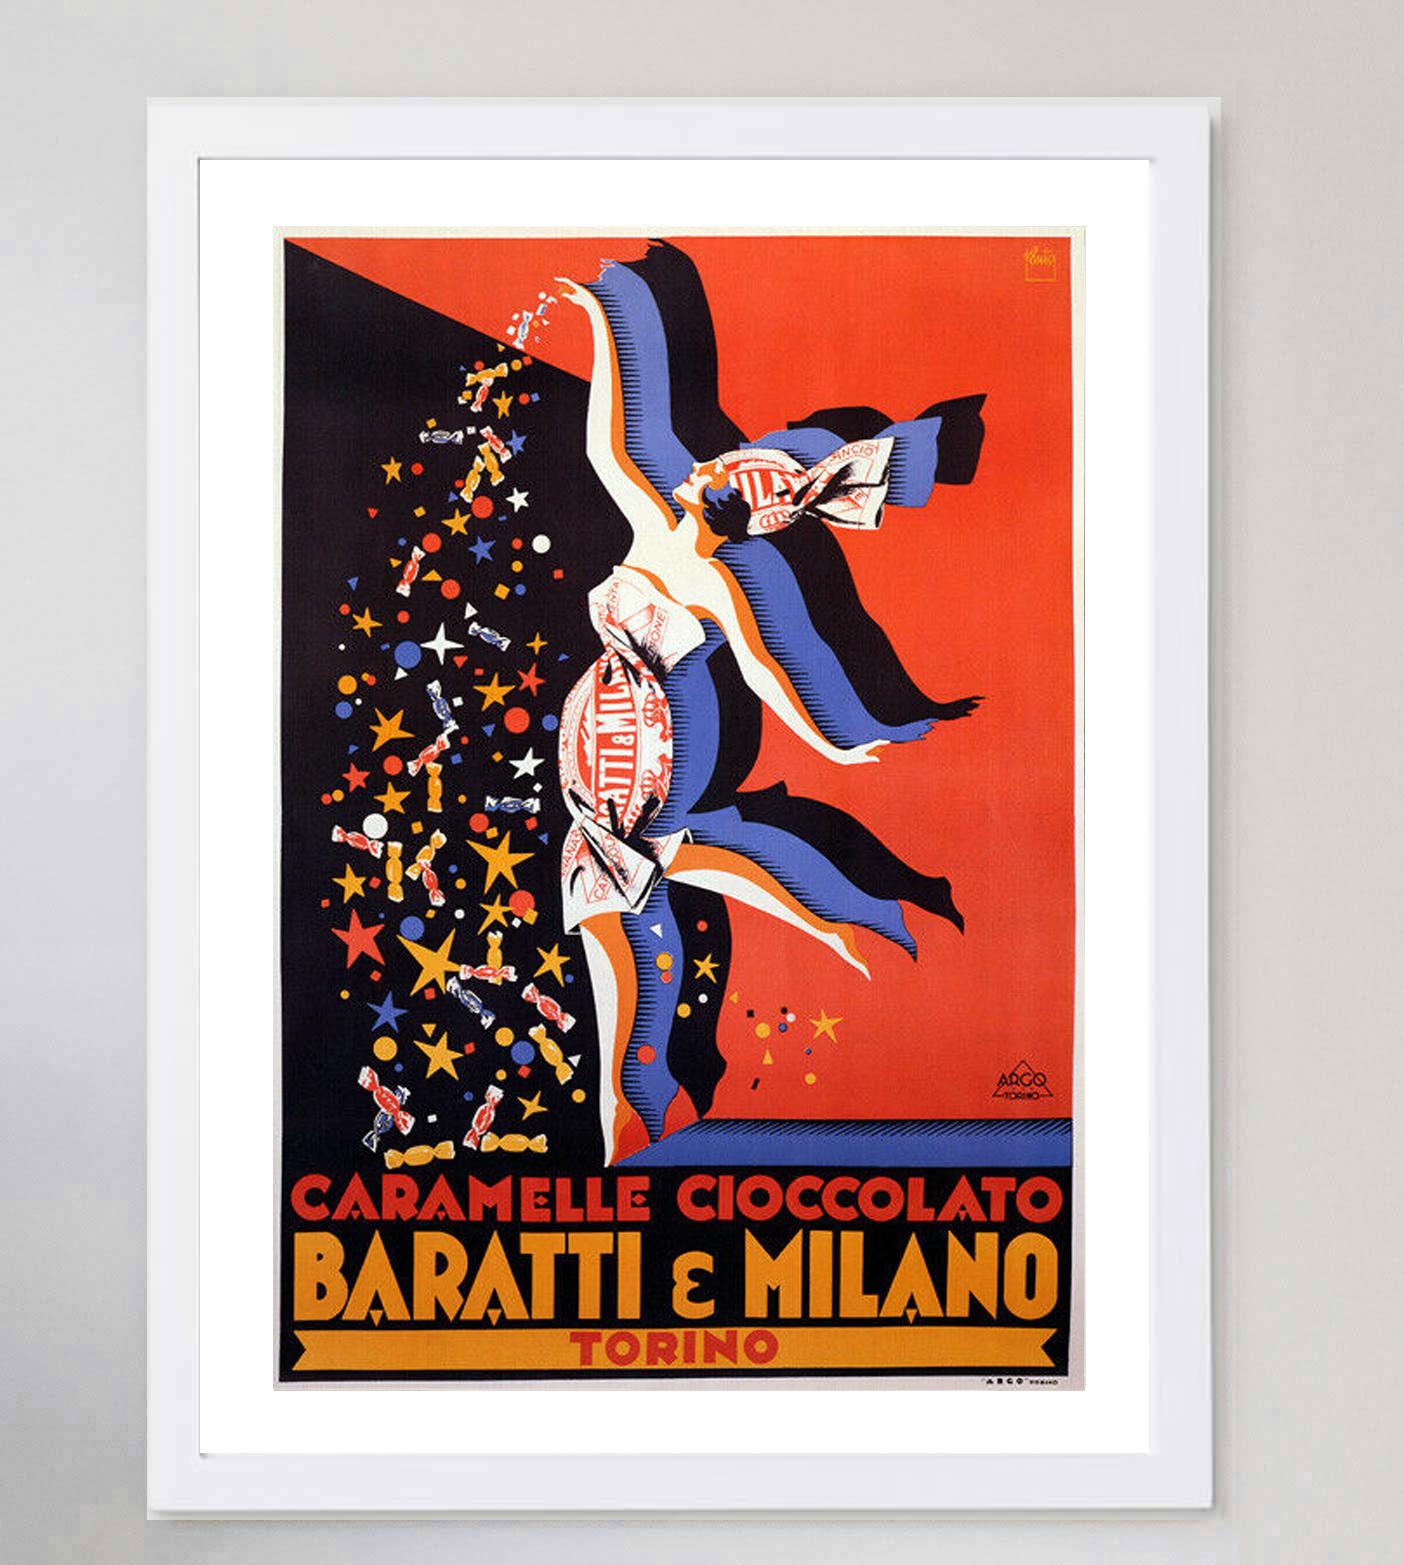 Art Deco 1950 Baratti e Milano Torino Original Vintage Poster For Sale